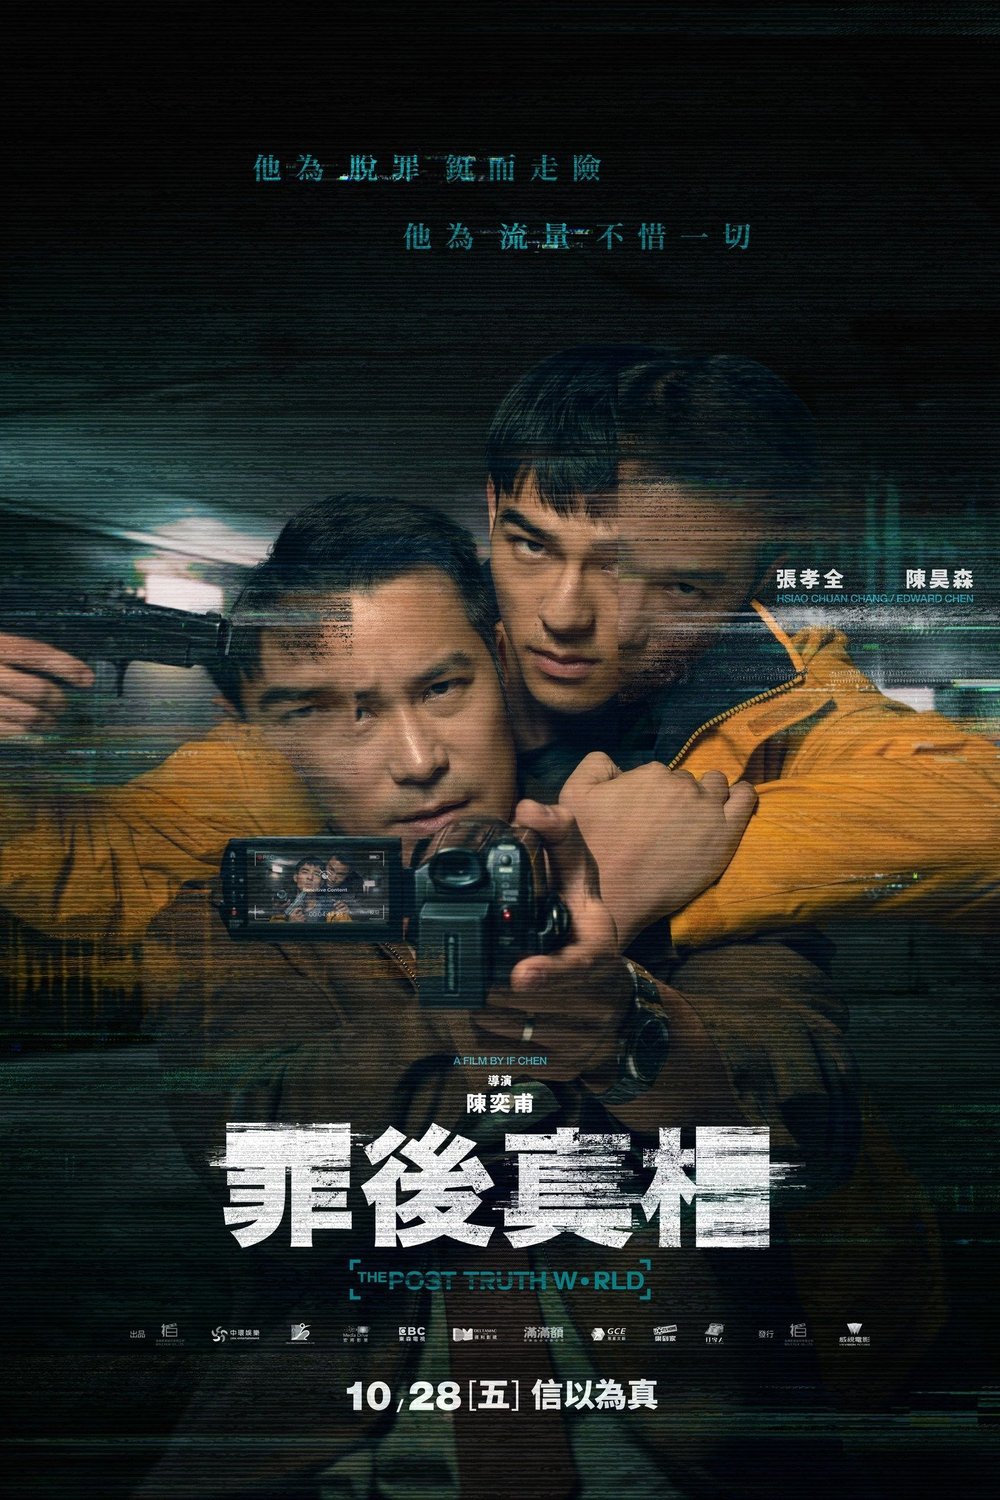 L'affiche originale du film Zui hou zhen xiang en Chinois